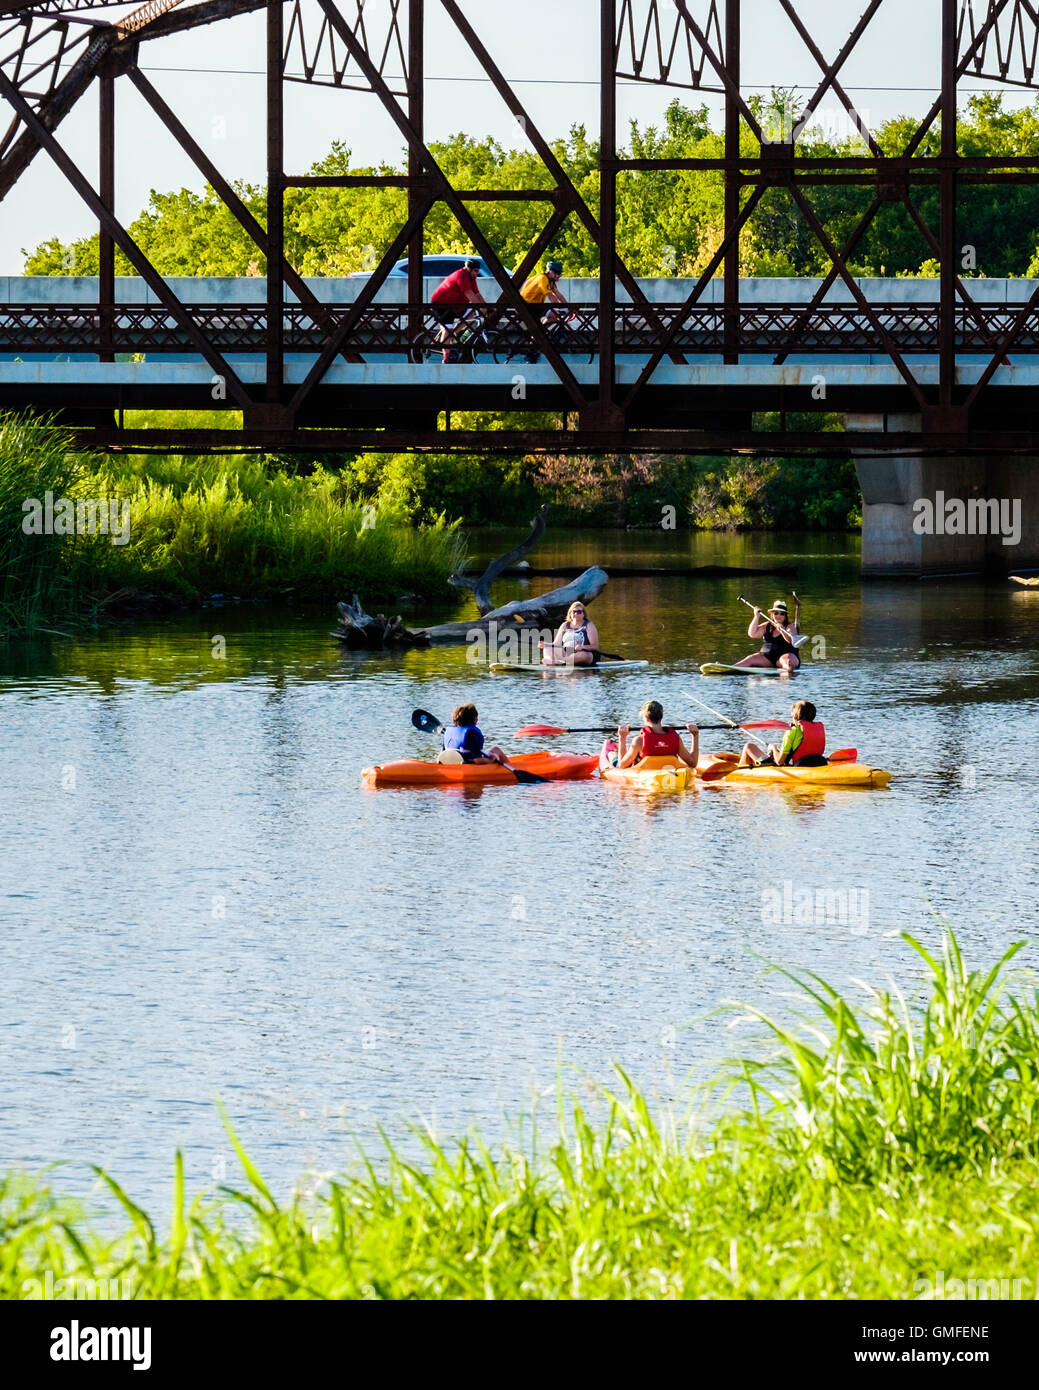 Deux femmes s'asseoir sur paddleboards tandis que 3 garçons paddle petit kayaks sous un vieux pont en treillis en acier sur la route 66. North Canadian river, New York, USA. Banque D'Images